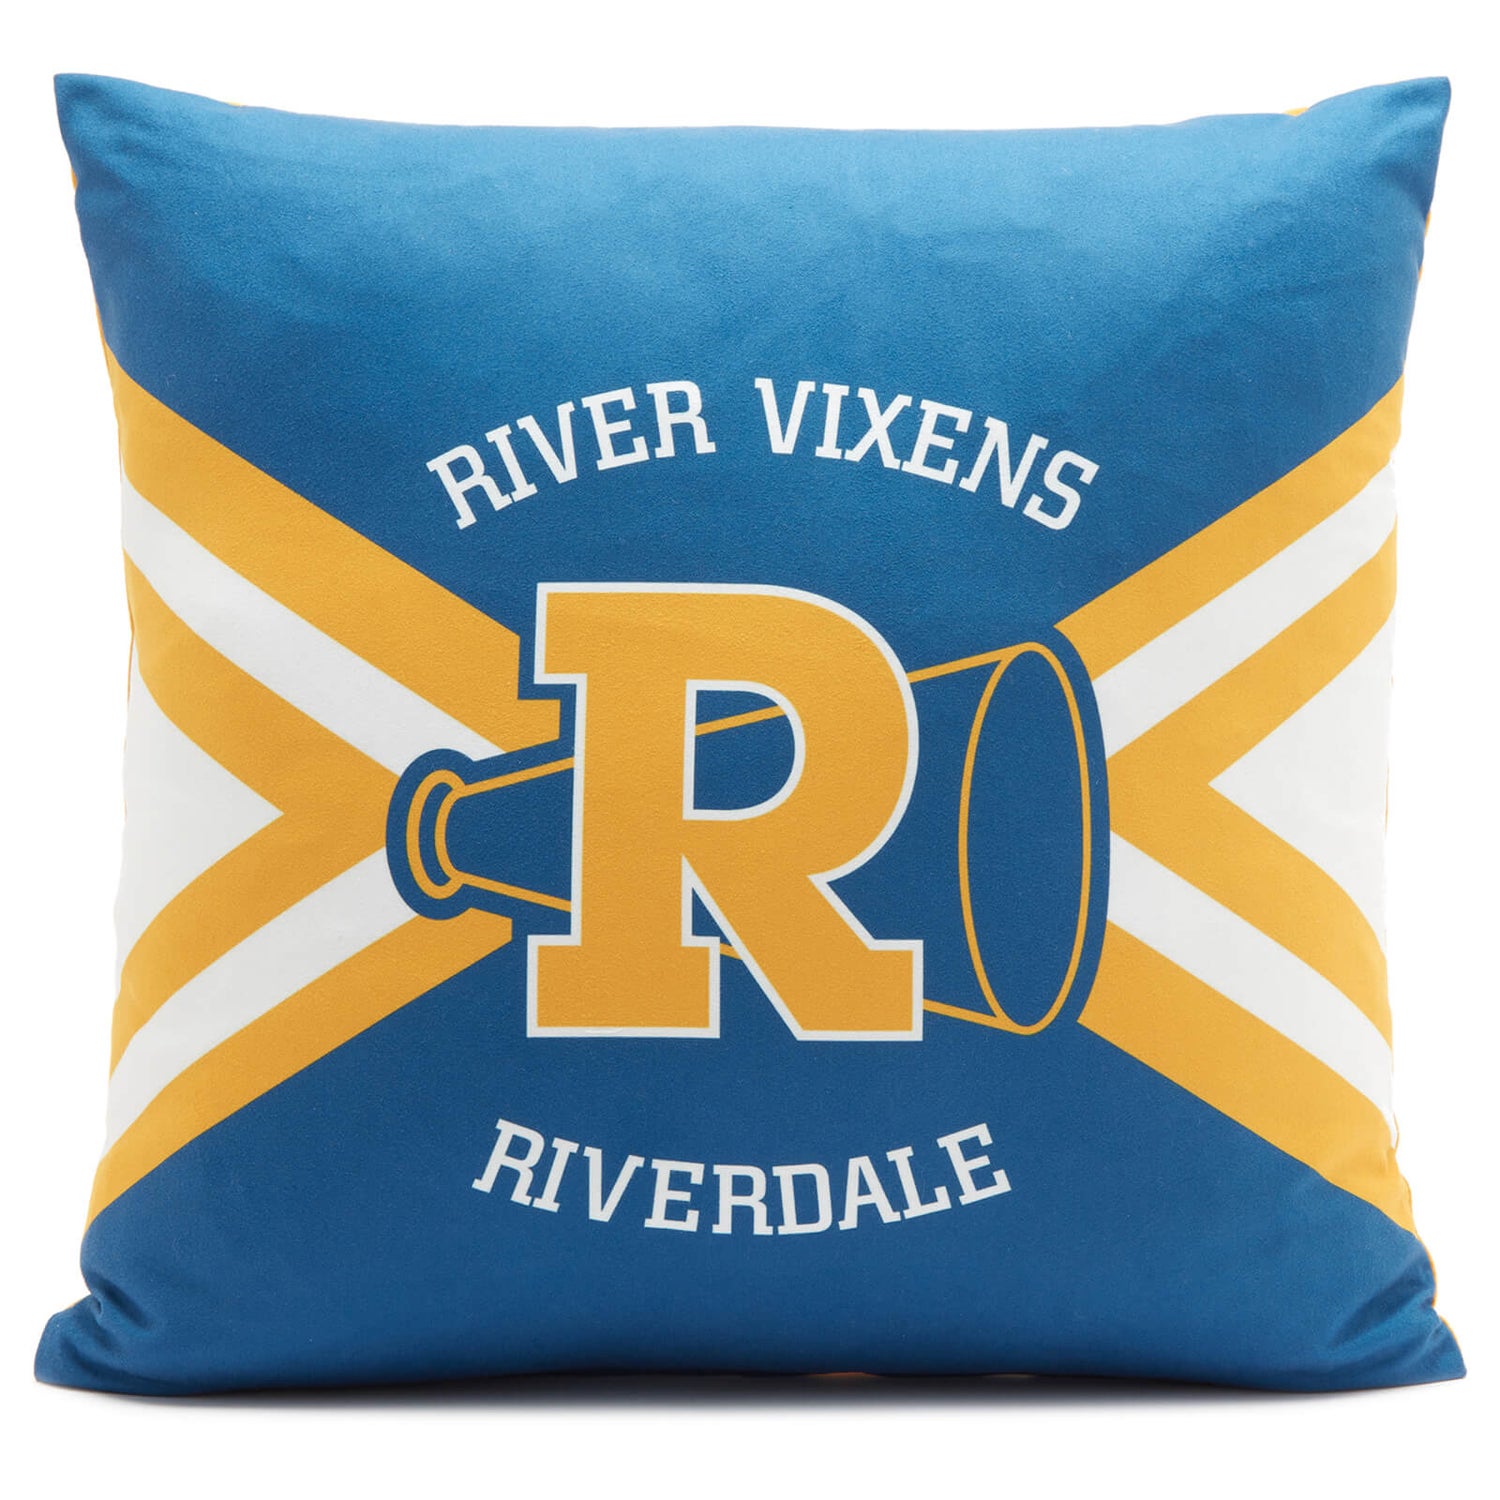 Riverdale Vixen Square Cushion